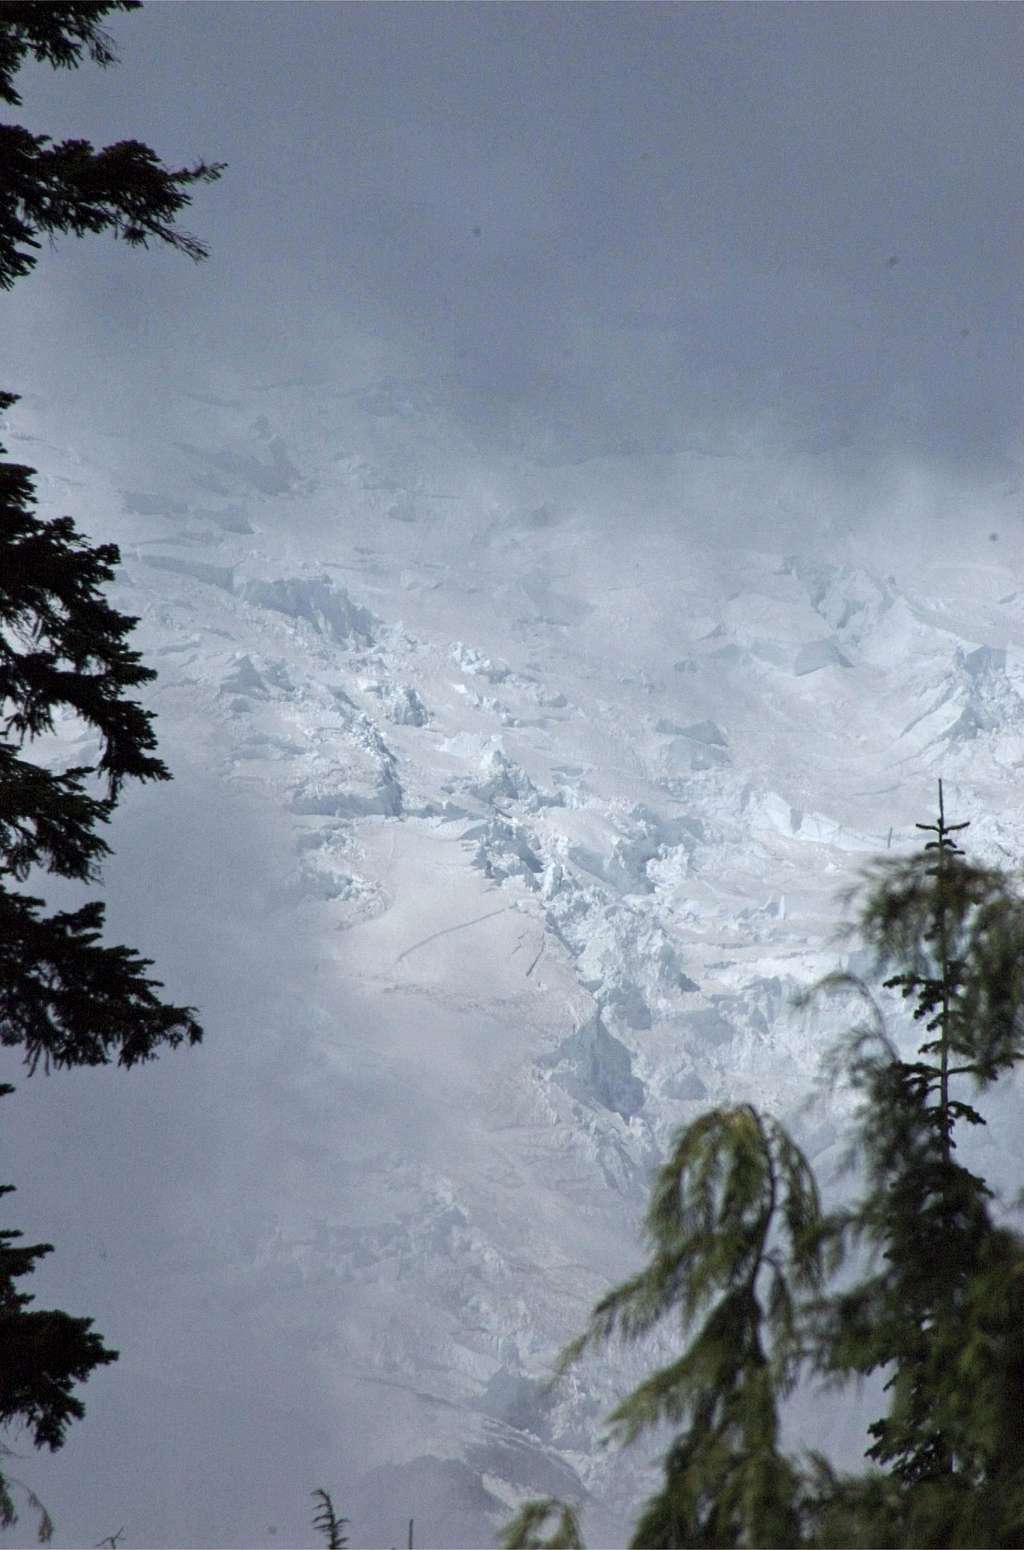 Fryingpan Glacier